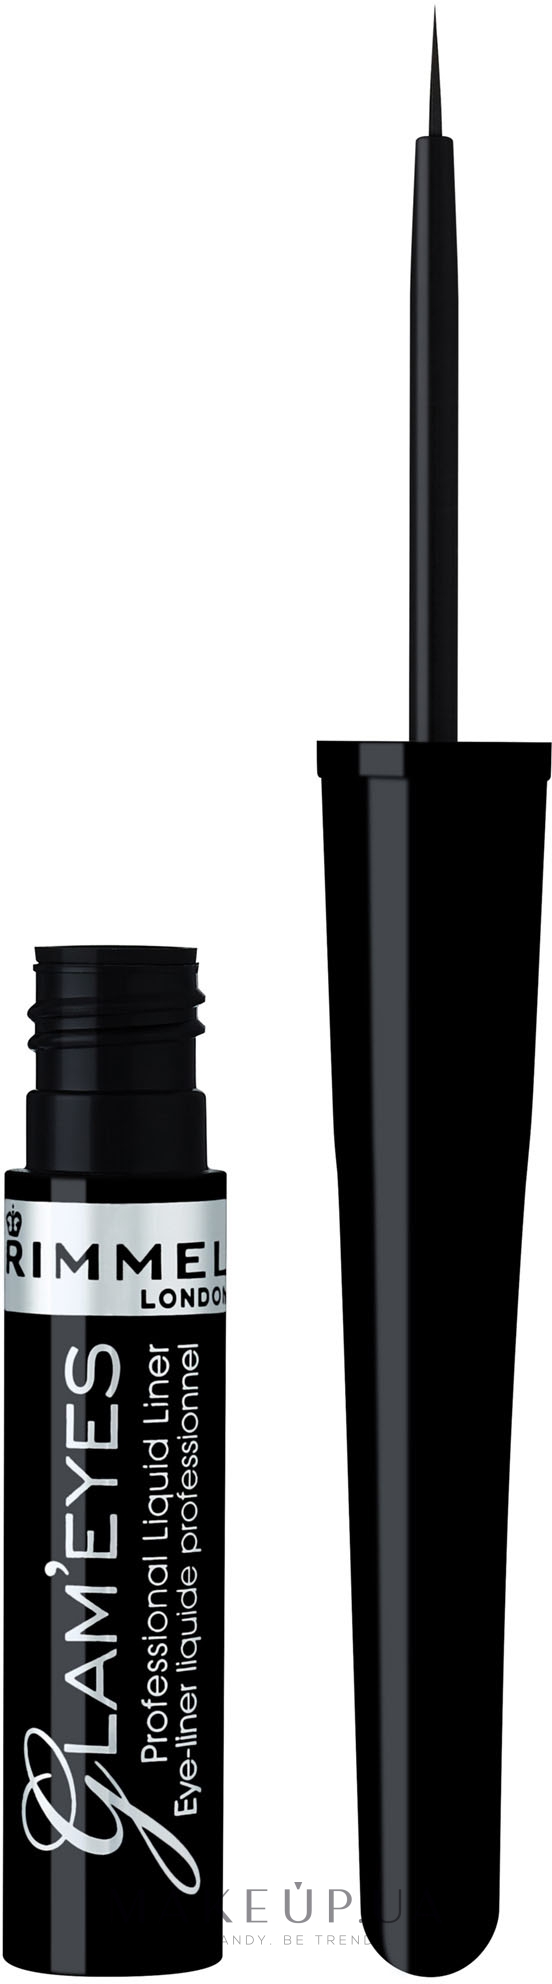 Жидкая подводка для век - Rimmel Glam'Eyes Professional Liquid Liner — фото 001 - Black Glamour